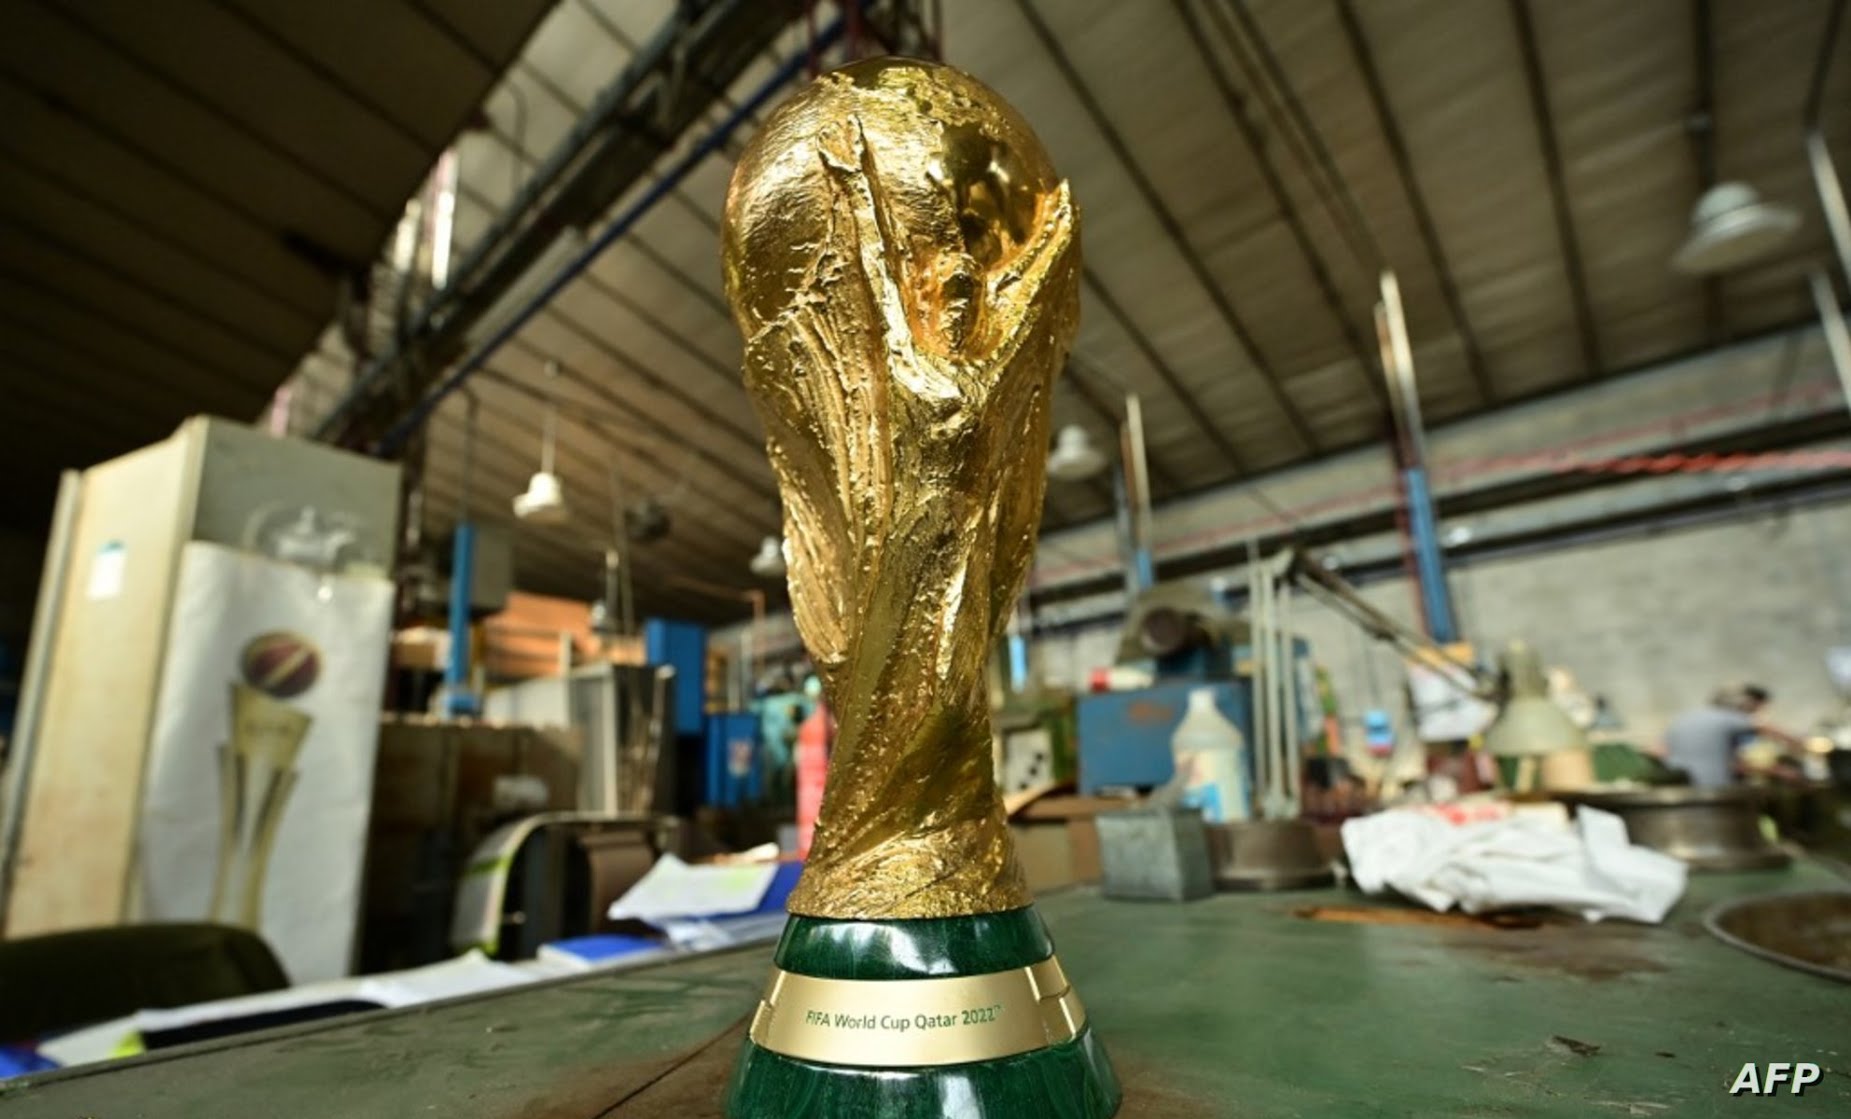 “بالصور” أسماء ملاعب مونديال قطر كاس العالم 2022   